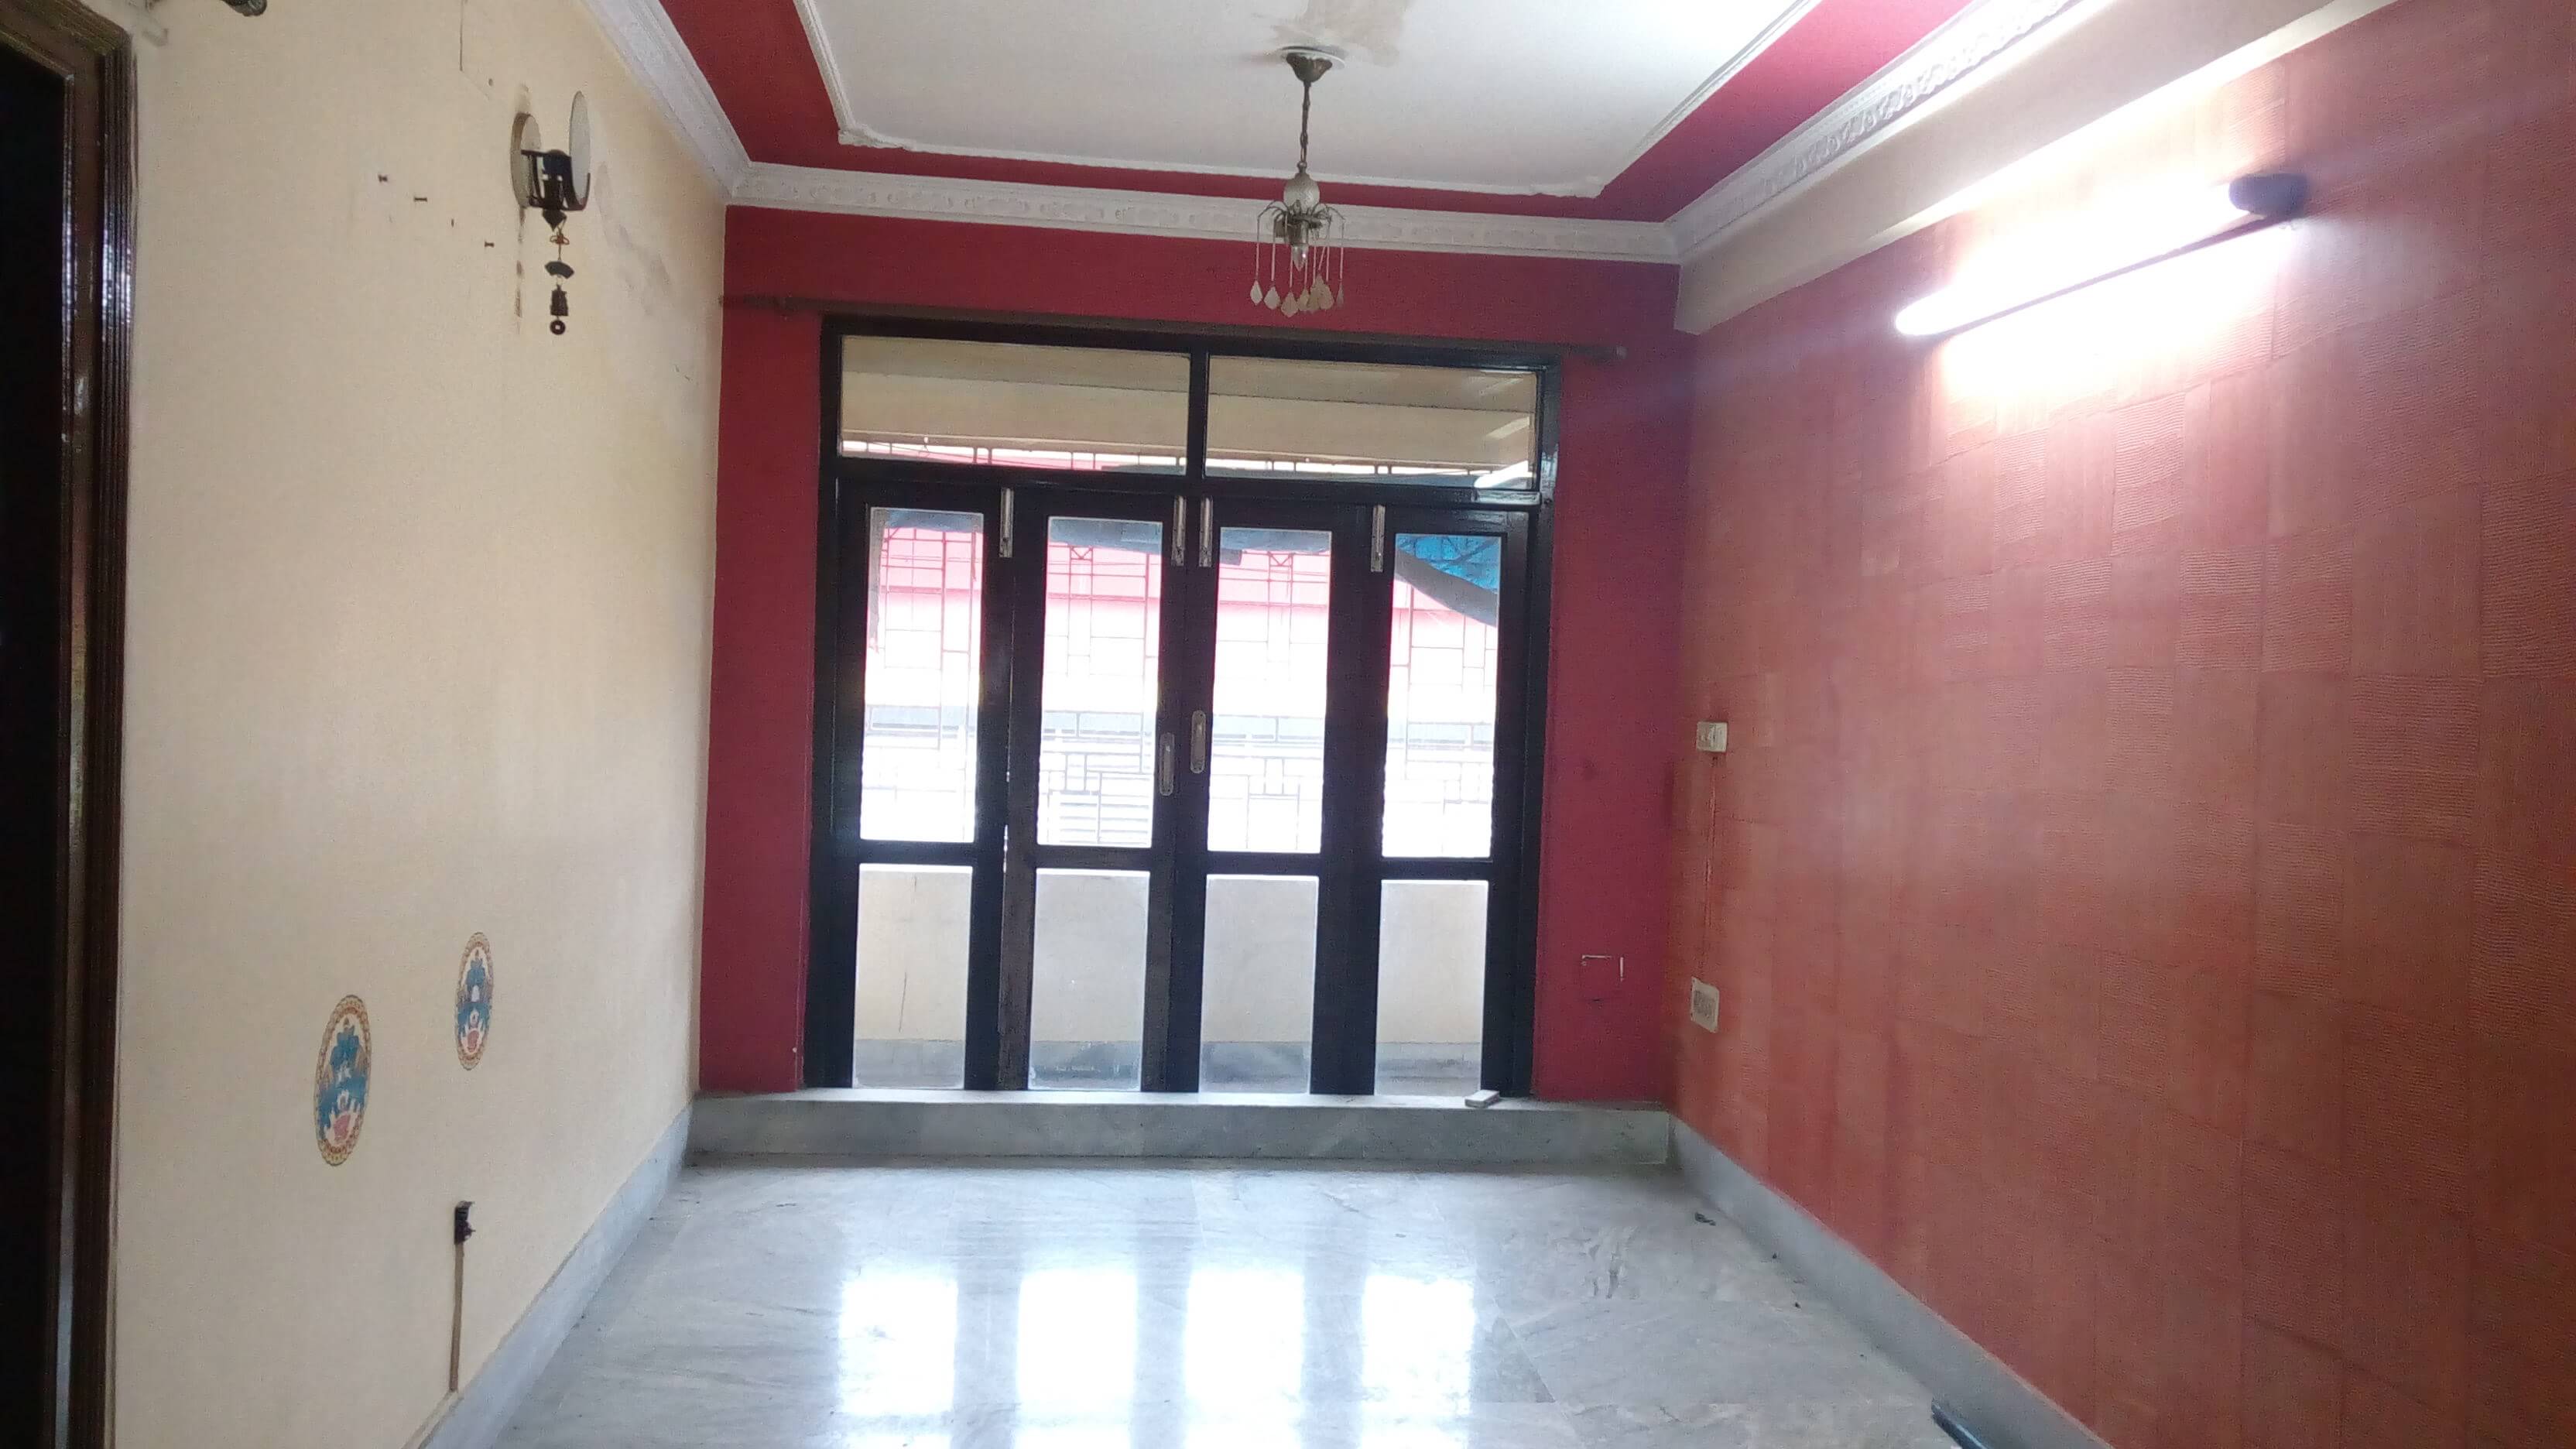 Flat For Sale in Naktala Kolkata (Id: 20314)